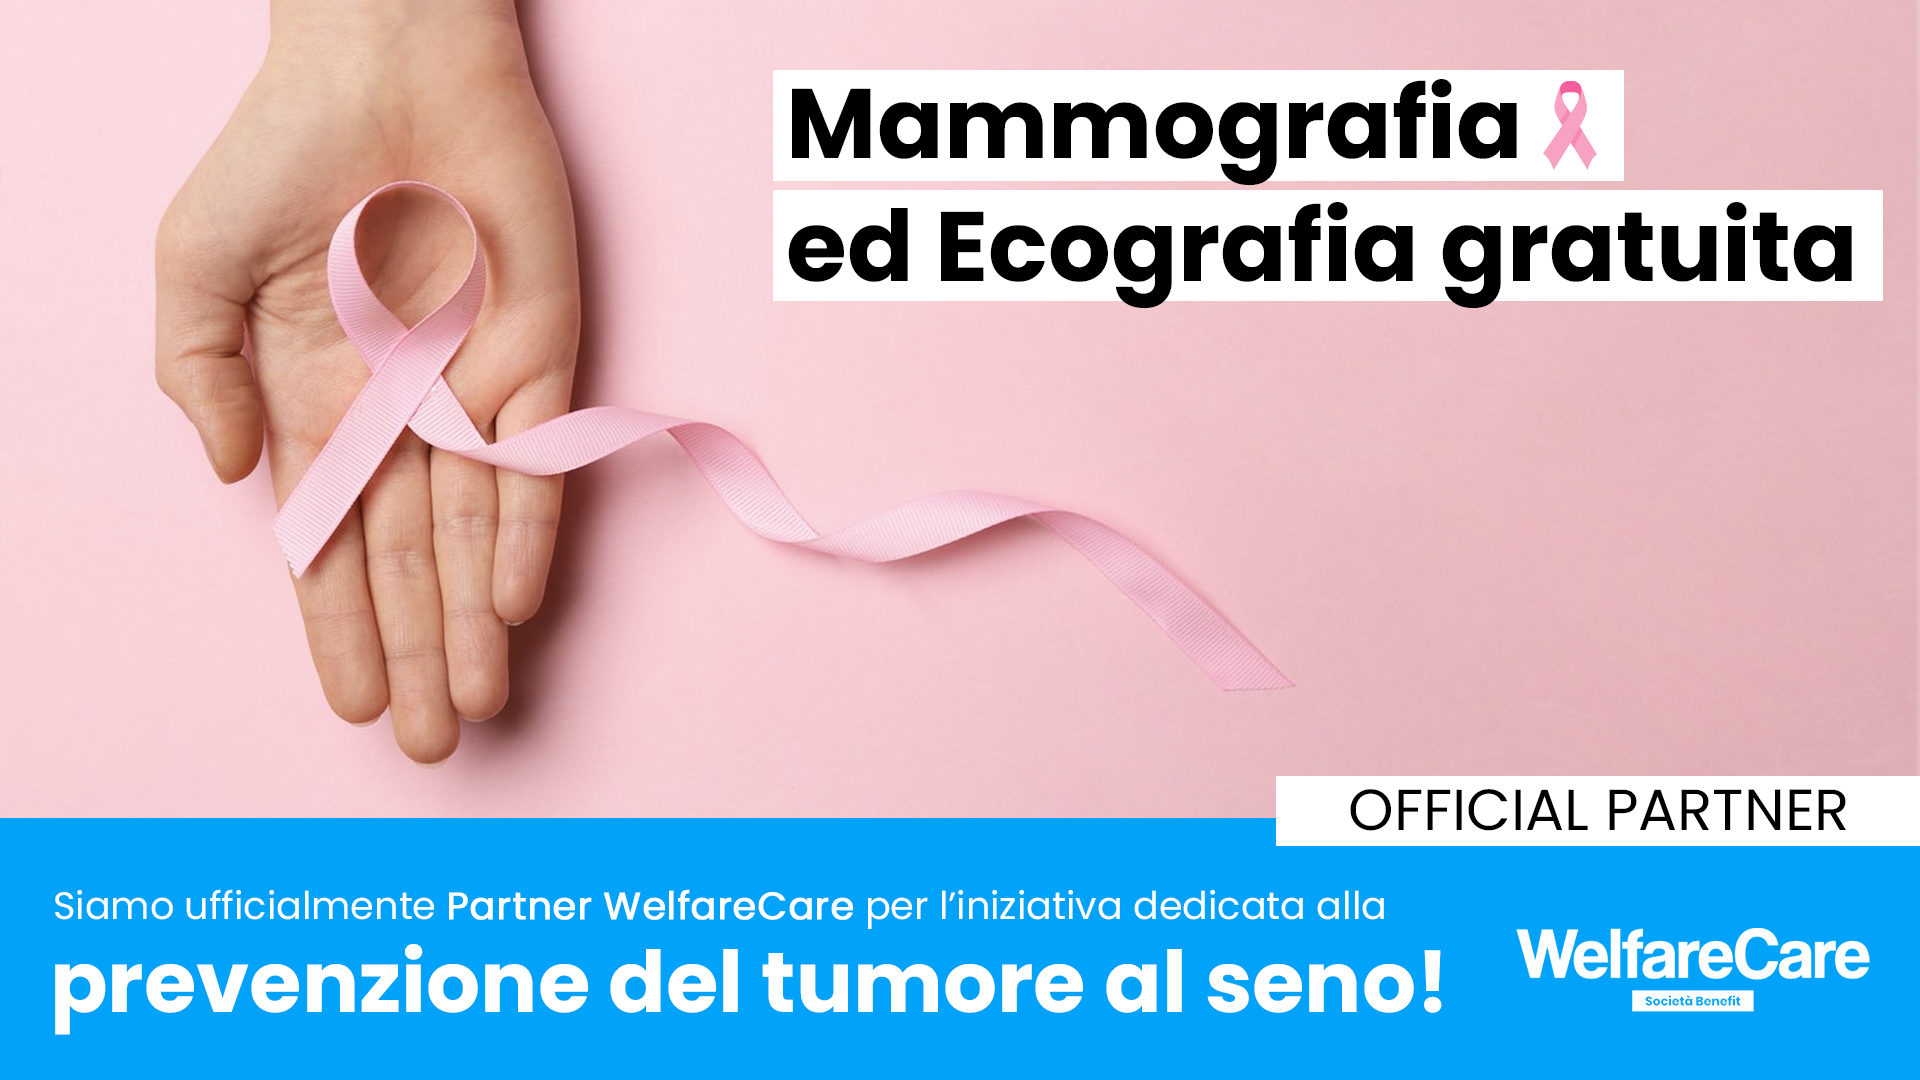 Gaudino Energy aderisce all’iniziativa WelfareCare dedicata alla prevenzione del tumore al seno